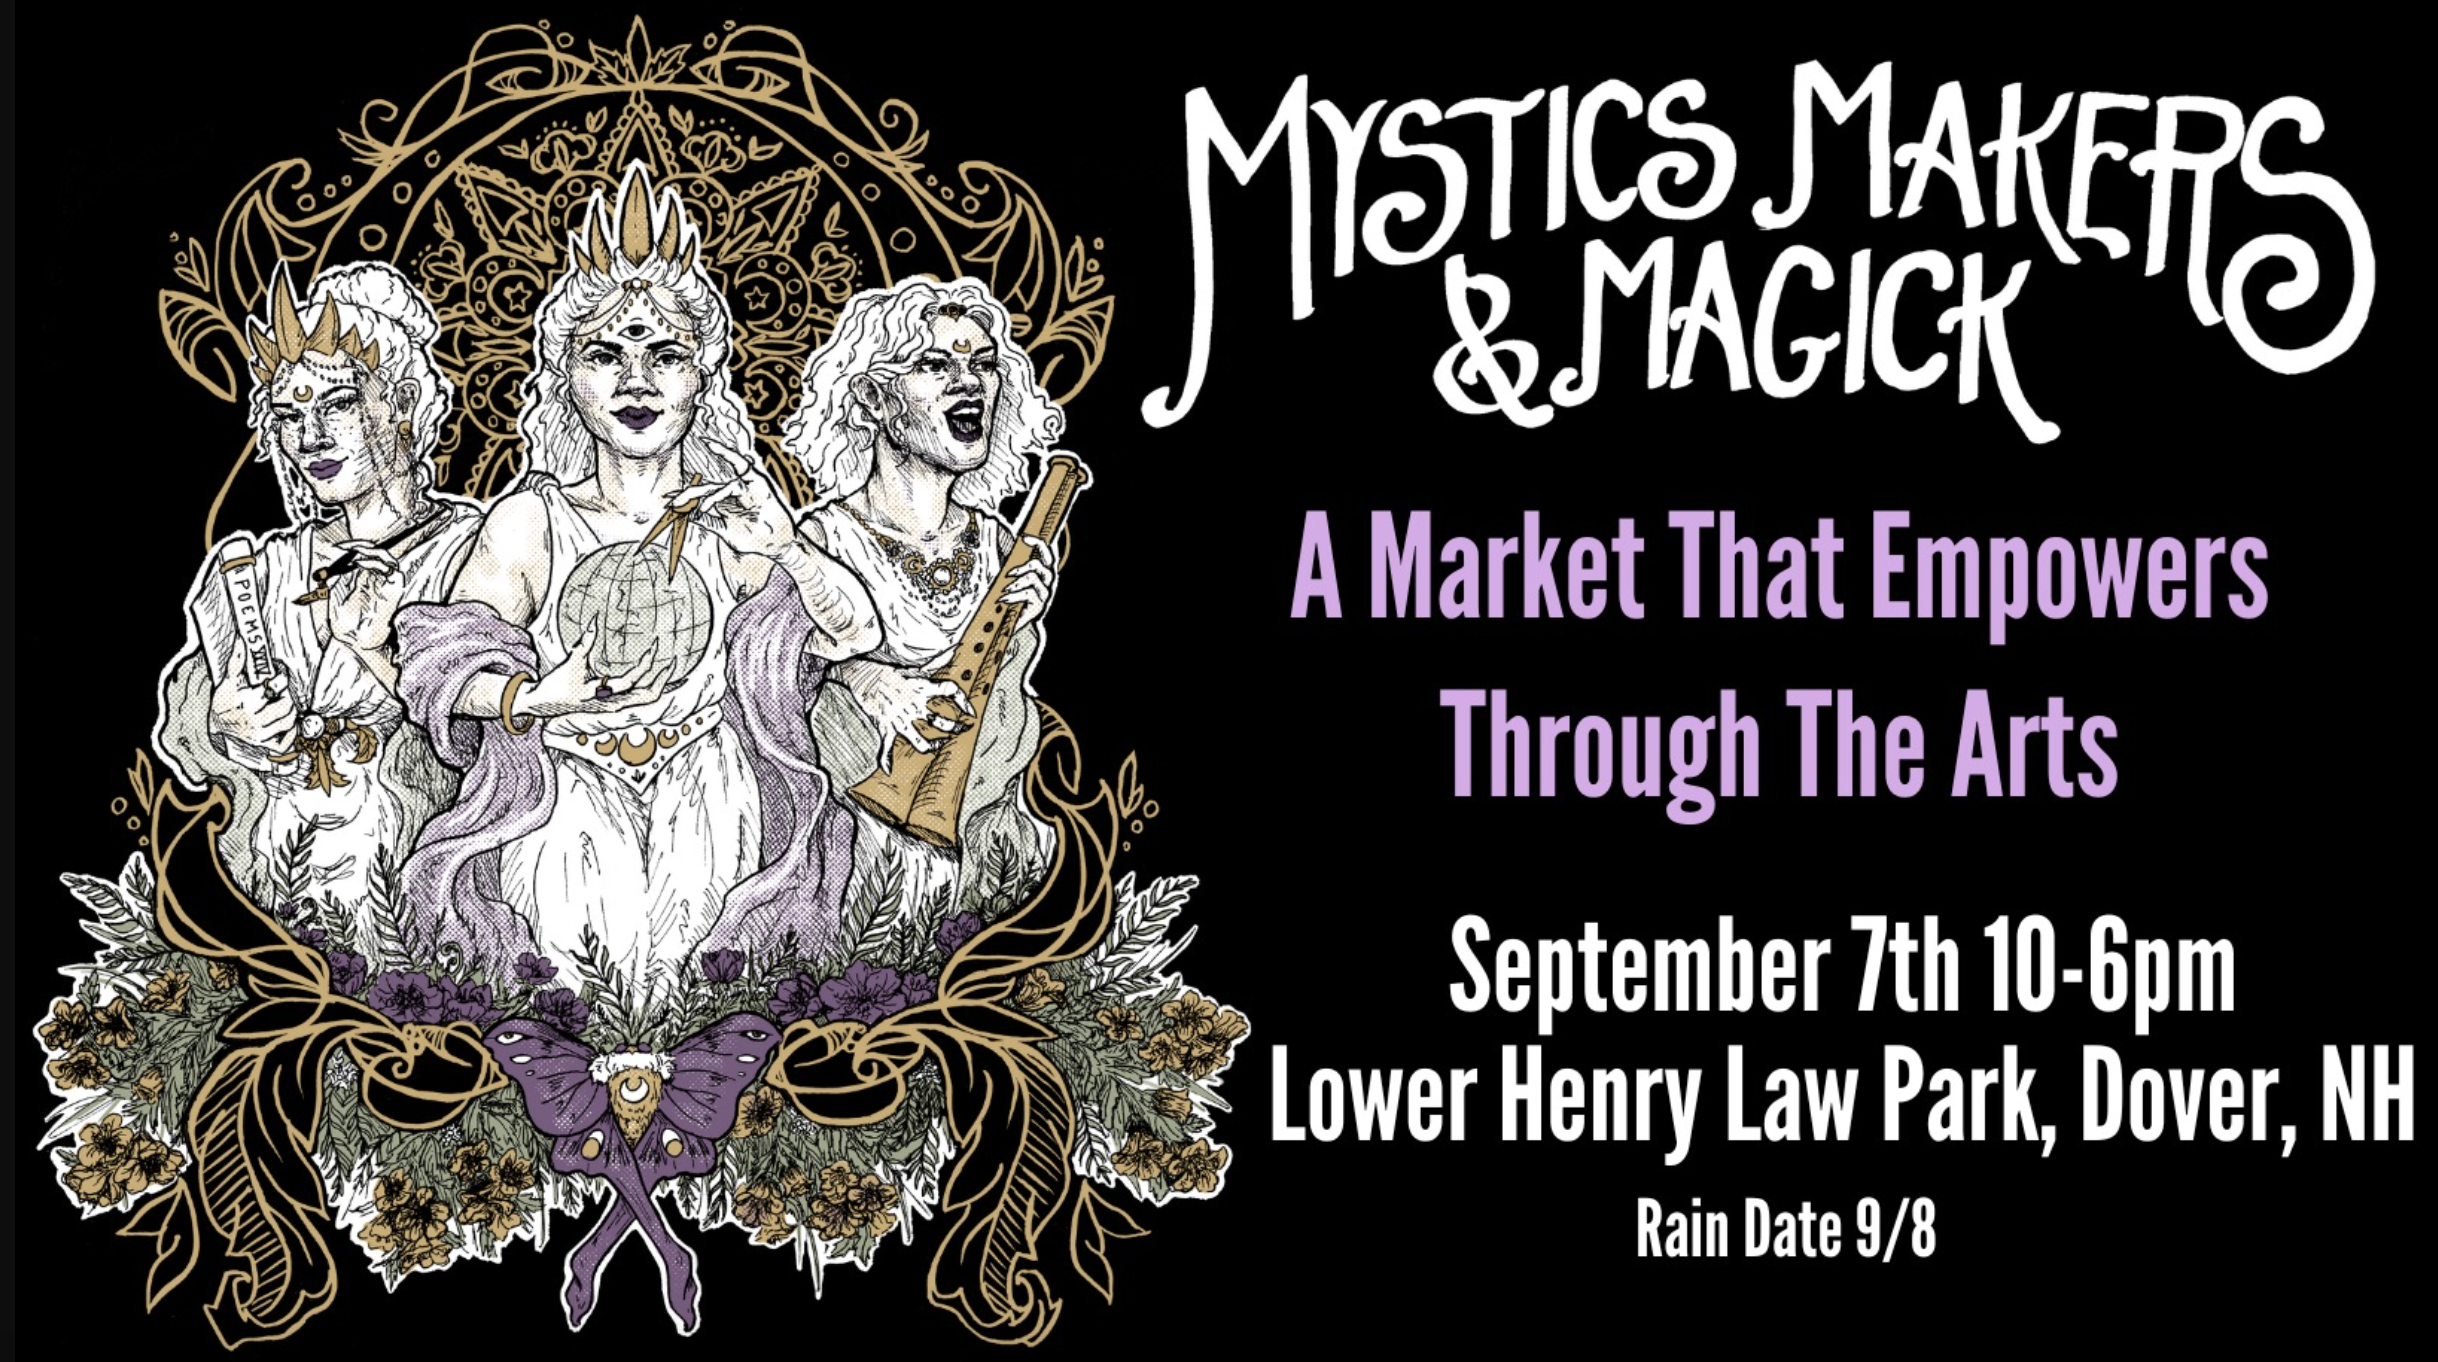 Mystics, Makers, & Magick Market